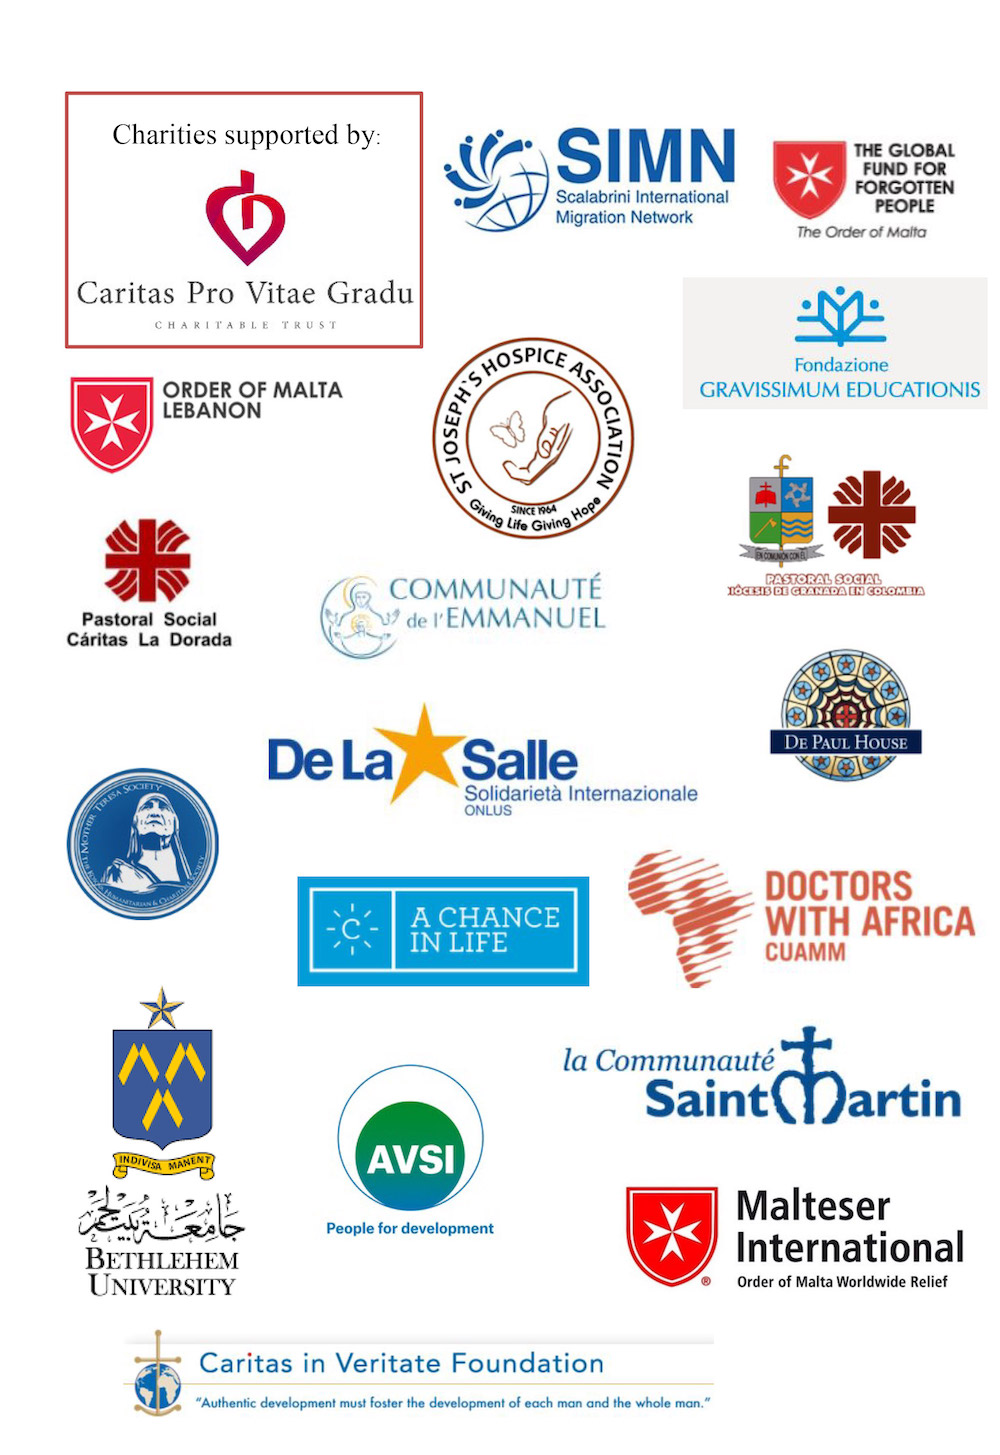 Caritas-Pro-Vitae-Gradu-Charitable-Trust---Annual-Report